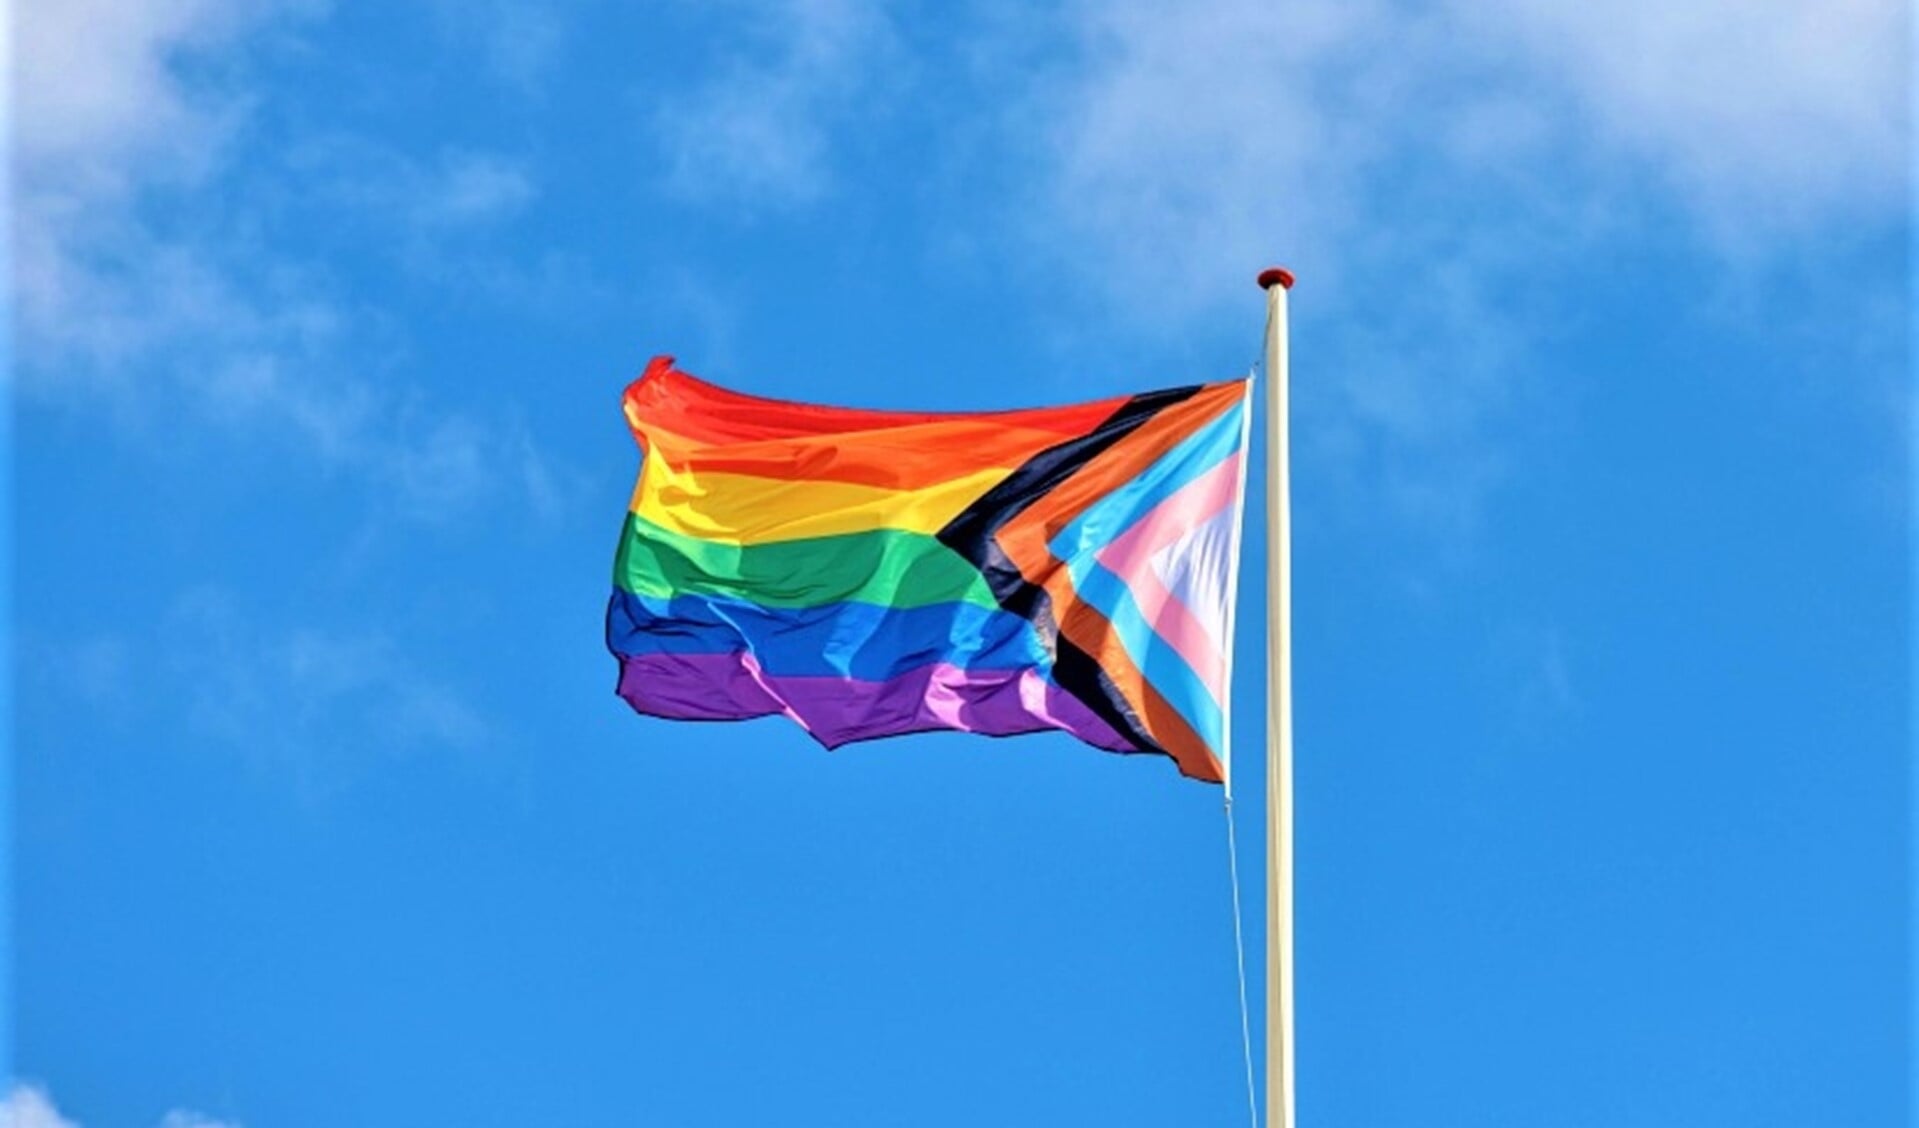 De gemeente hijst de inclusieve regenboogvlag om aandacht te besteden aan Roze Zaterdag (foto: pr gemeente). 